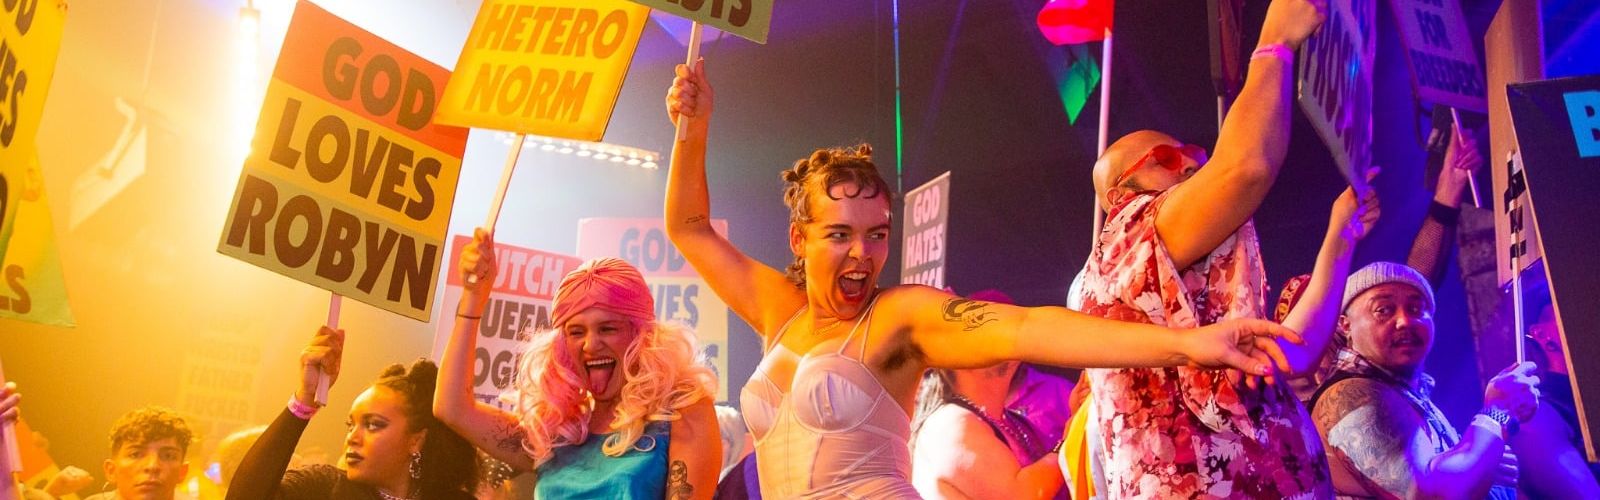 UK queer hubs LGBT events Homobloc 2019 in Manchester HERO. CREDIT Jody Hartley